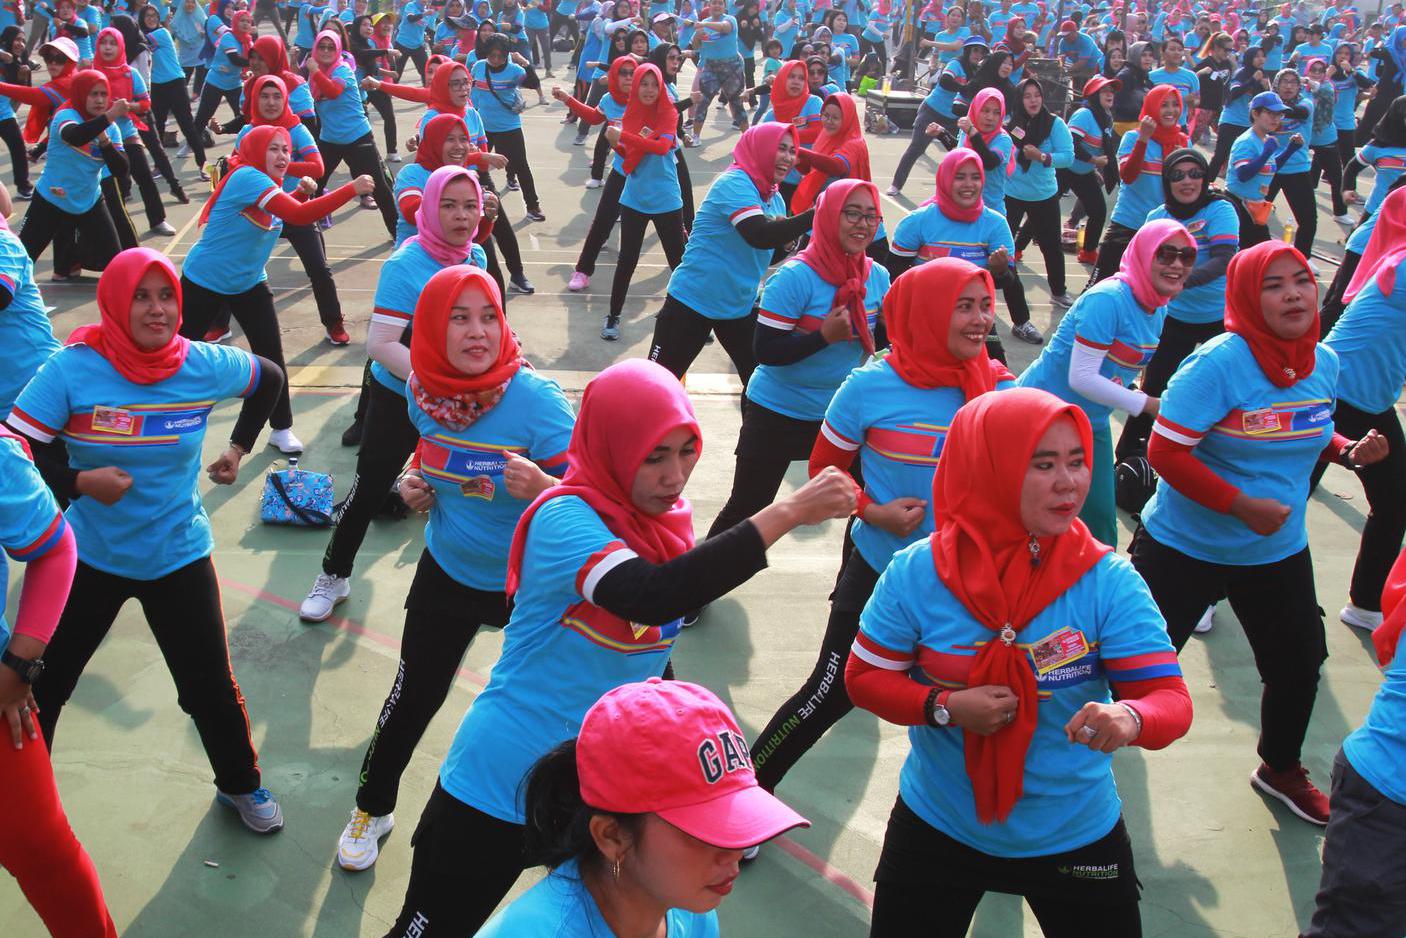 Ribuan member independen Herbalife Nutrition Indonesia melakukan senam bersama saat perayaan Herbalife Nutrition Day (HND) 2019 dan juga Kampanye Hidup Sehat di Tangerang, Banten, Sabtu (12/10/2019). HND yang diselenggarakan di 81 kota dan melibatkan 33,5